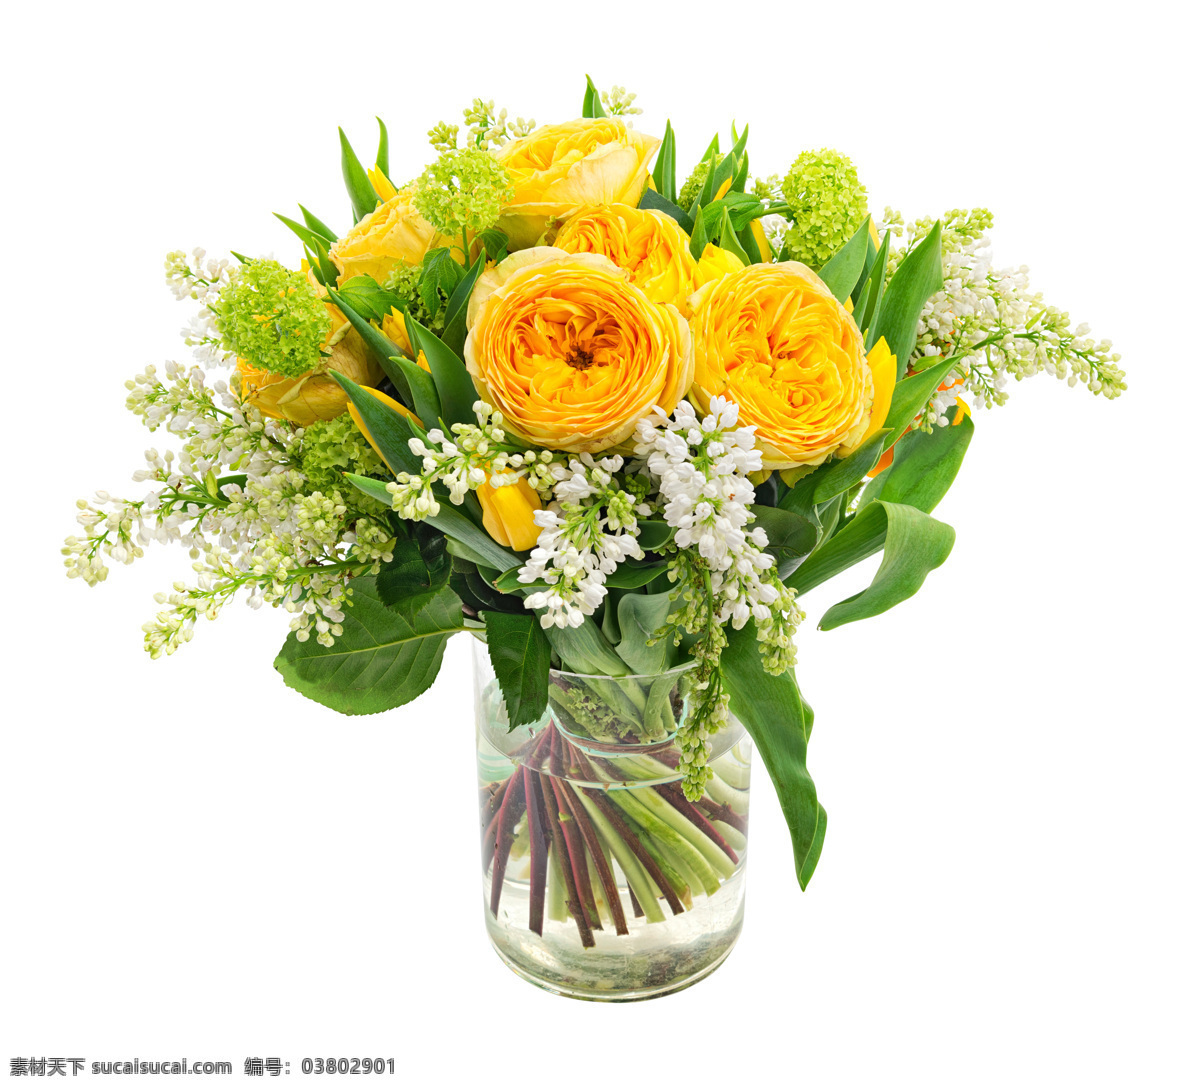 好看 黄色 插花 植物 花朵 花卉 鲜花 花瓶